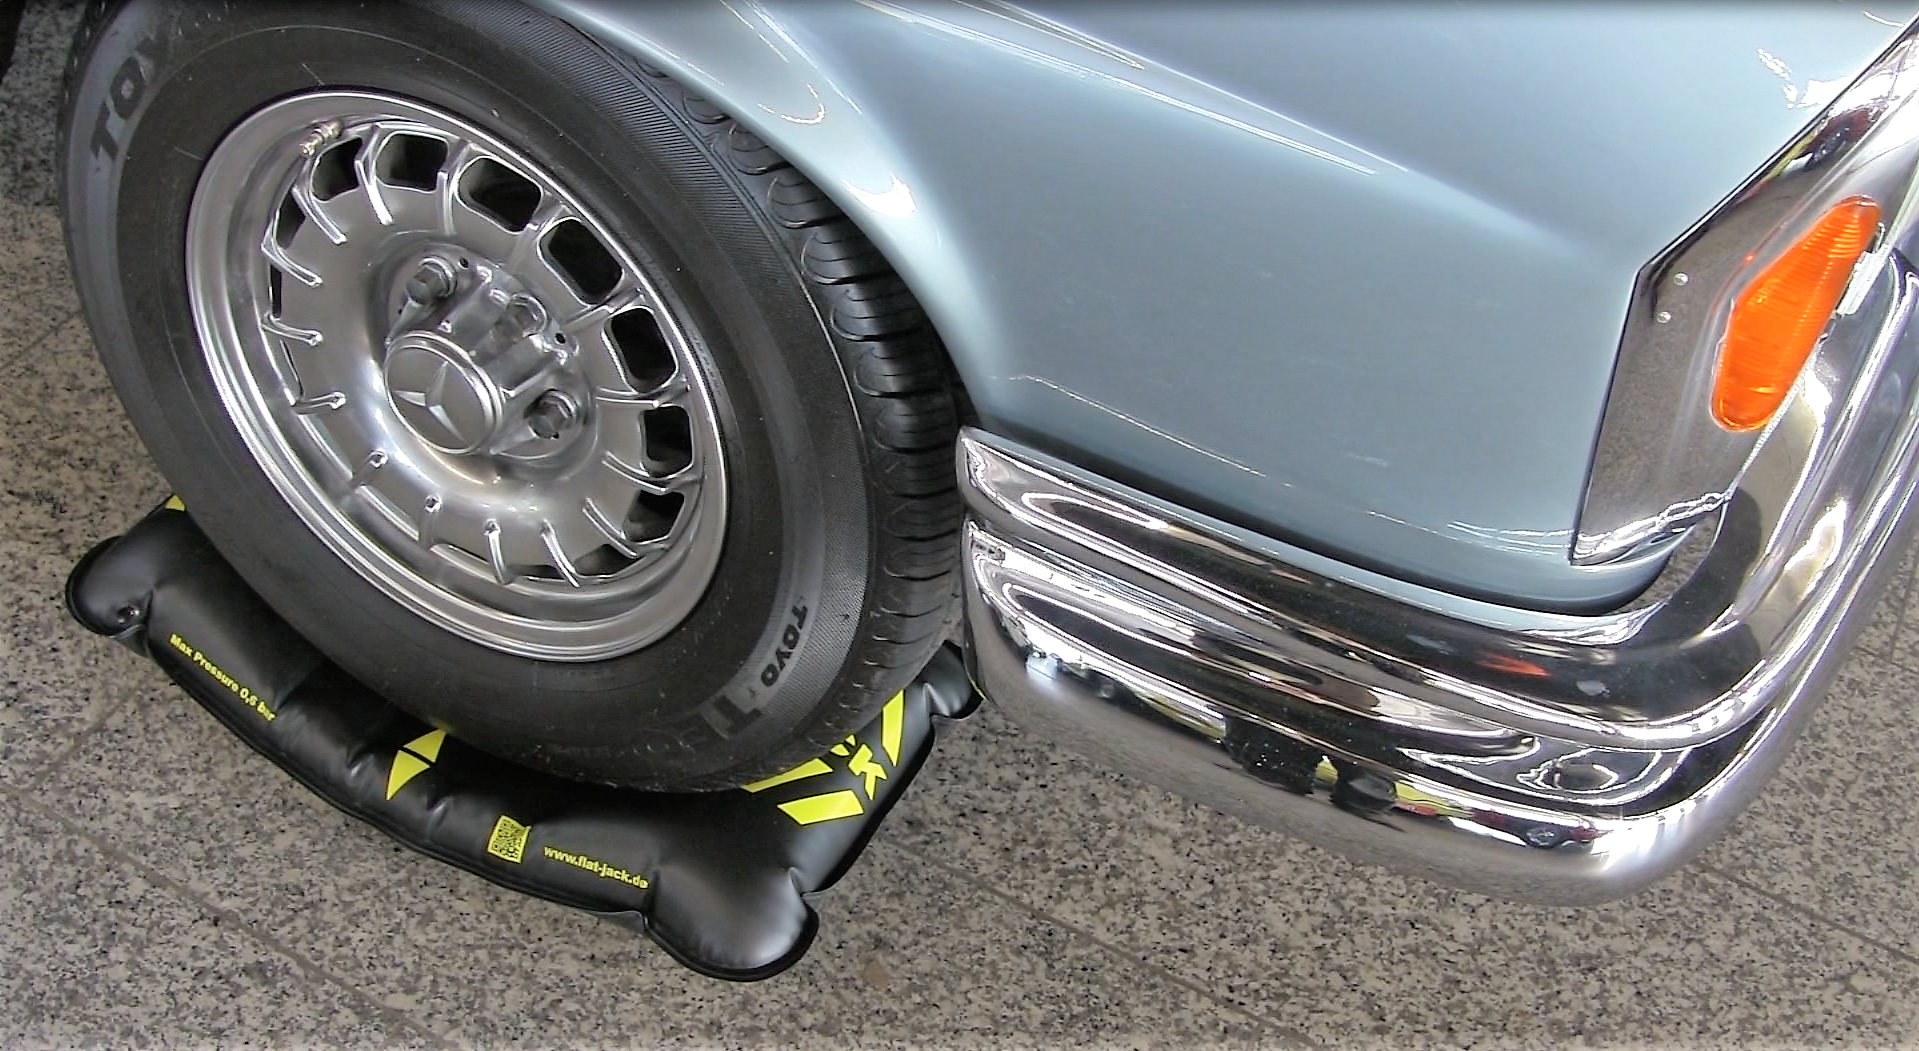 für Motorräder Reifenfüllschlauch Luftpumpe Gummischlauch flexibel Auto/aufblasende Reifen auf LKW/Wohnmobil Hochgeschwindigkeitspumpe 